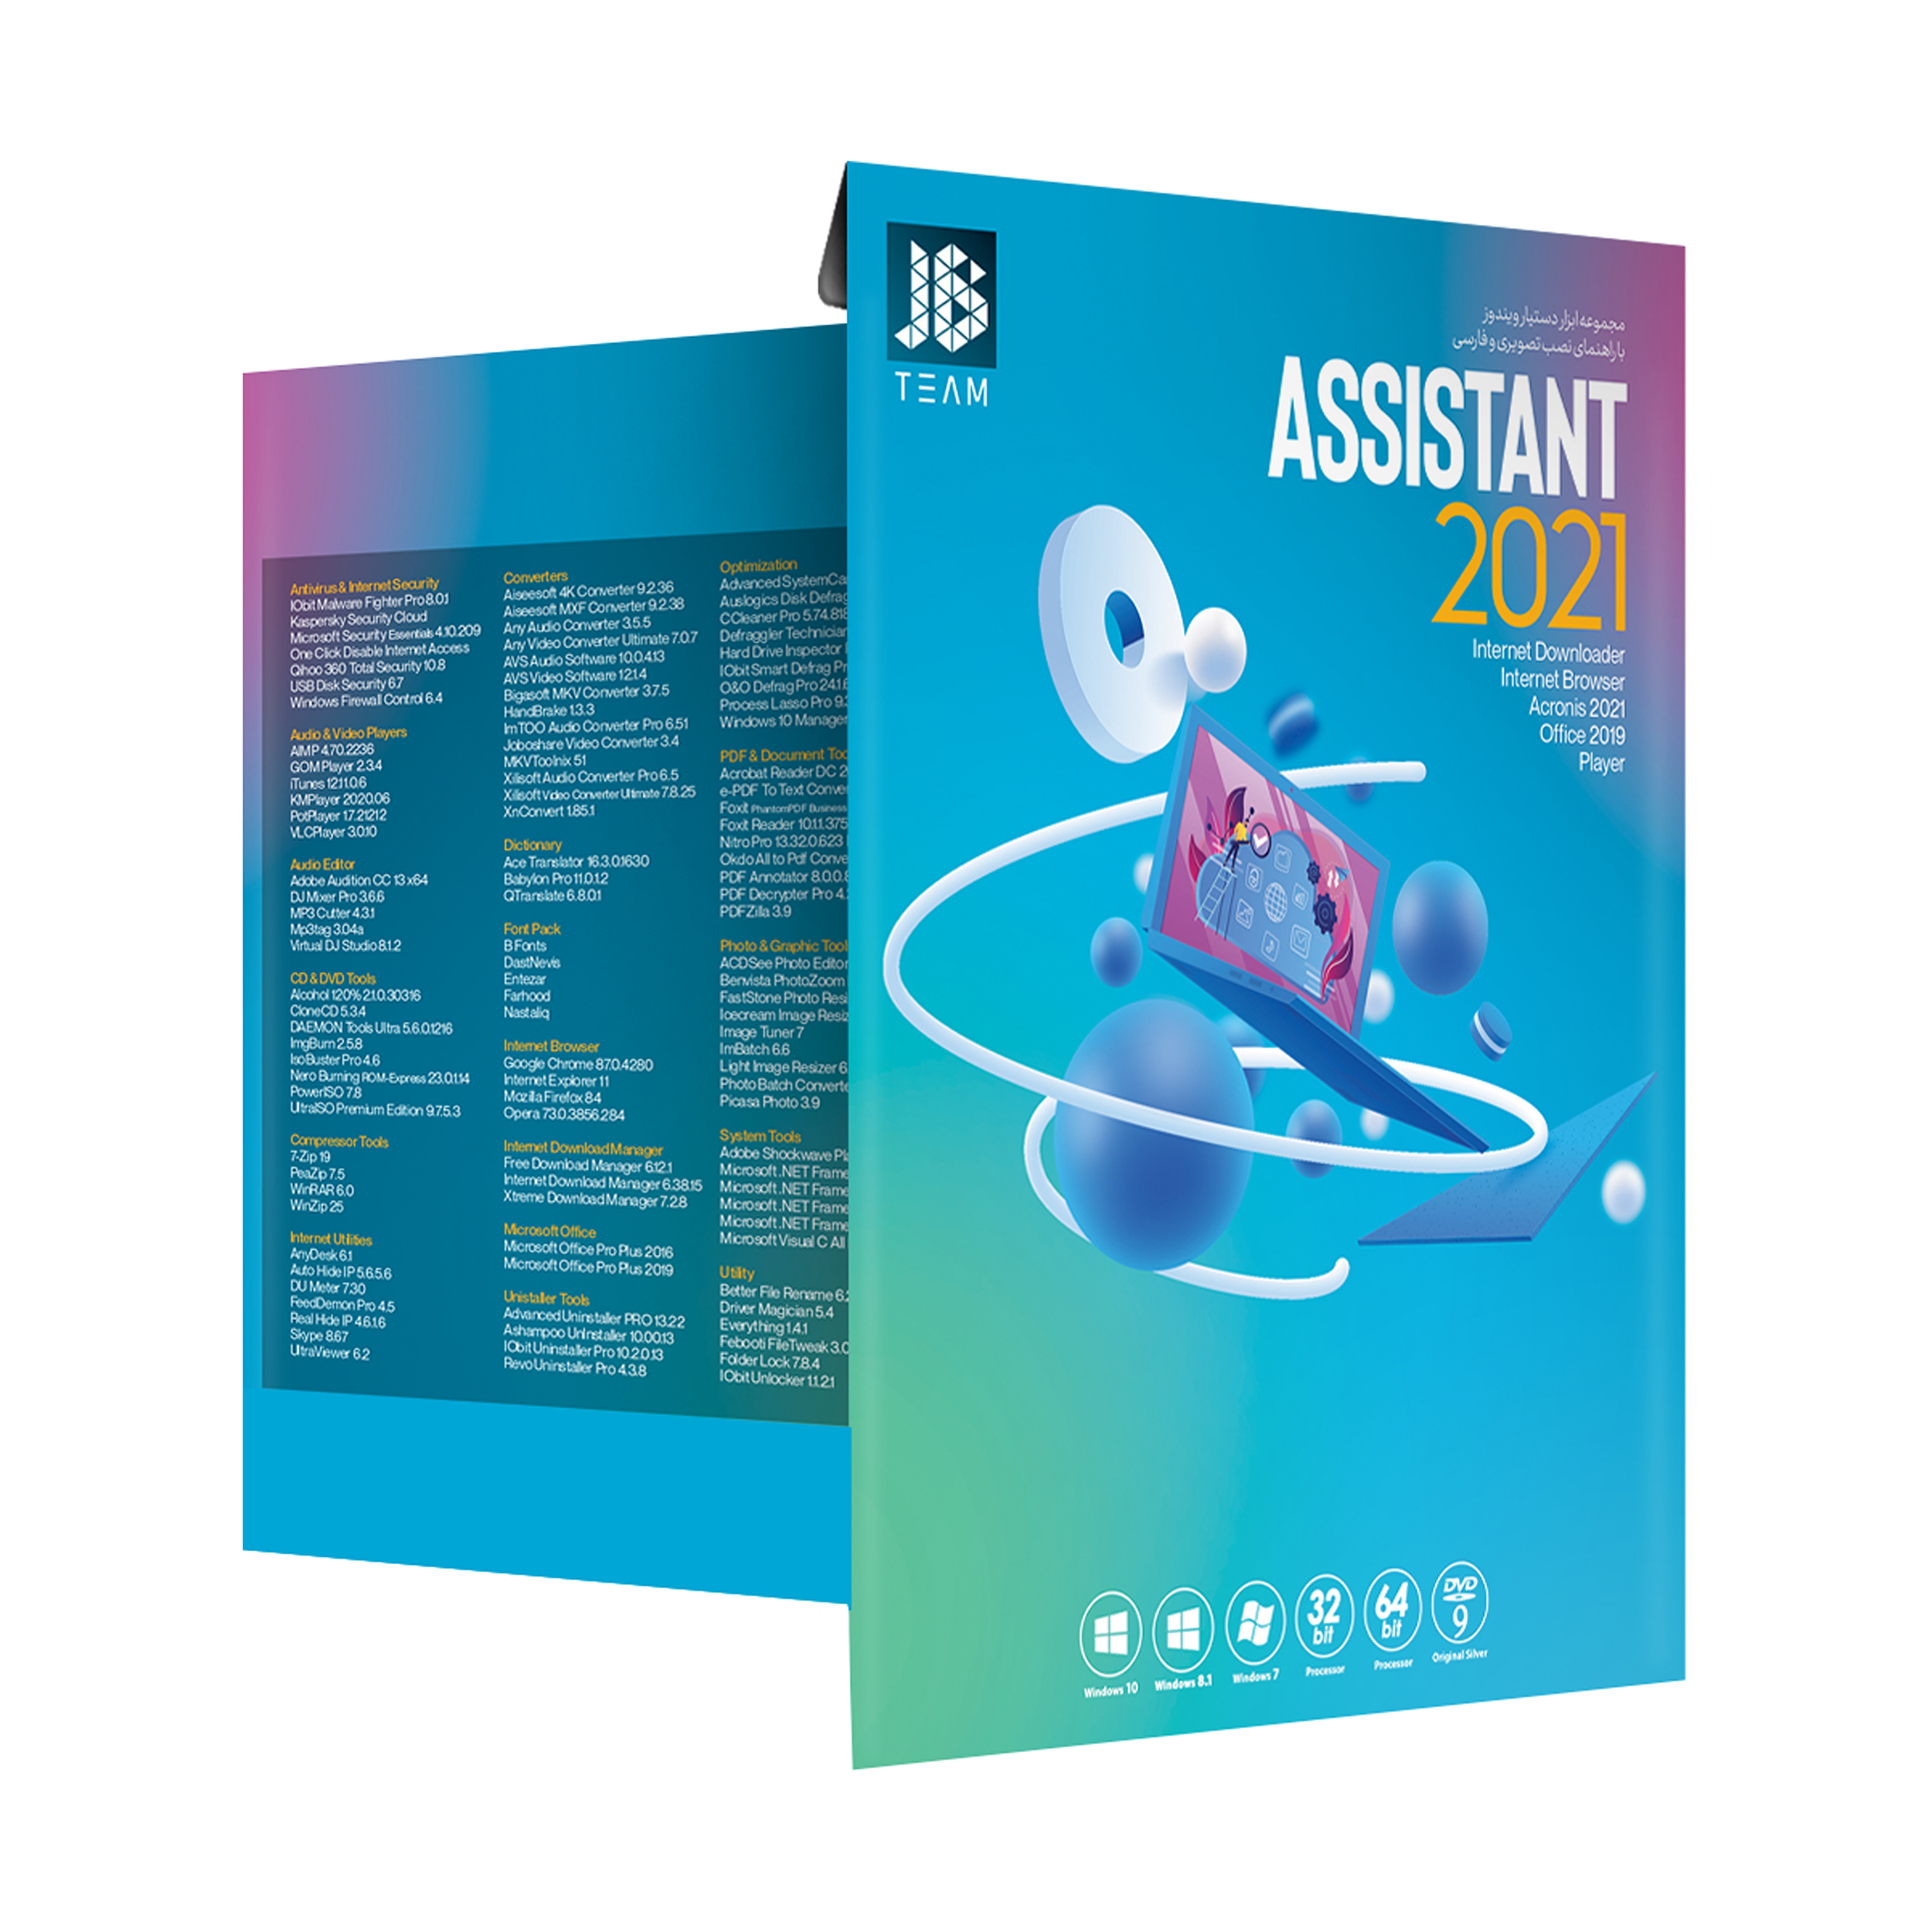 مجموعه نرم افزار Assistant 2021 نشر جی بی تیم